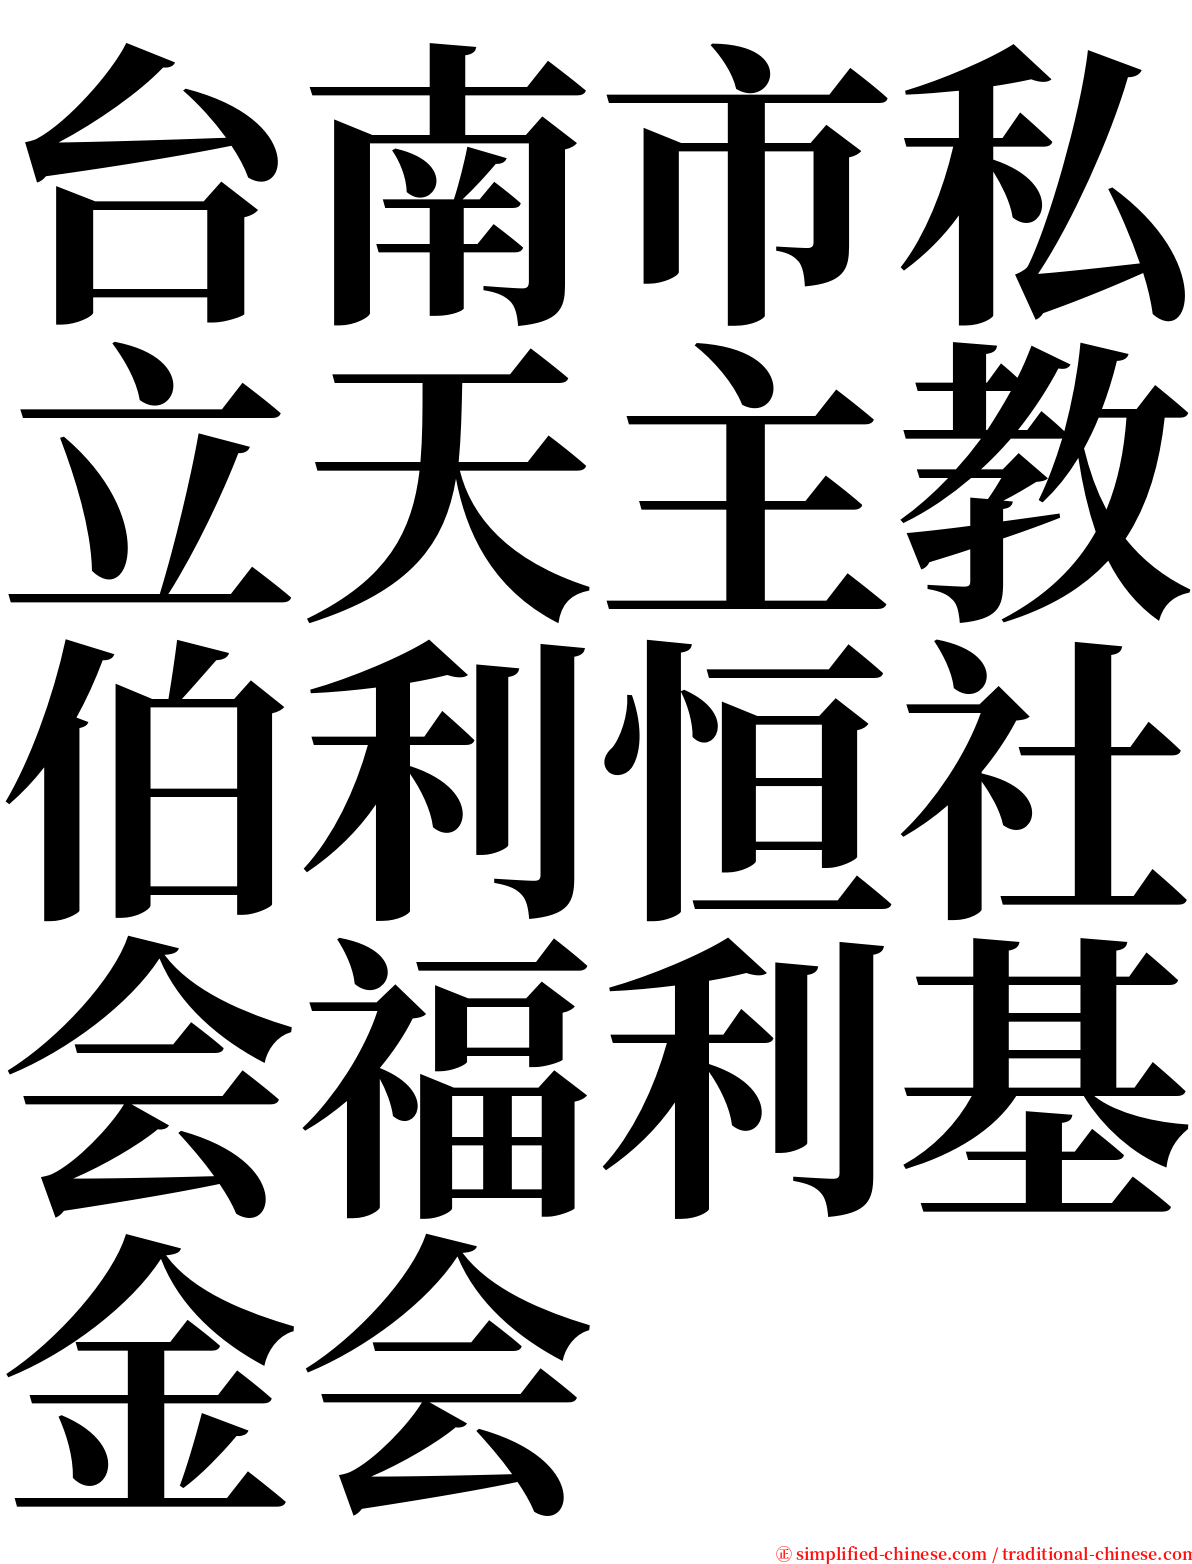 台南市私立天主教伯利恒社会福利基金会 serif font